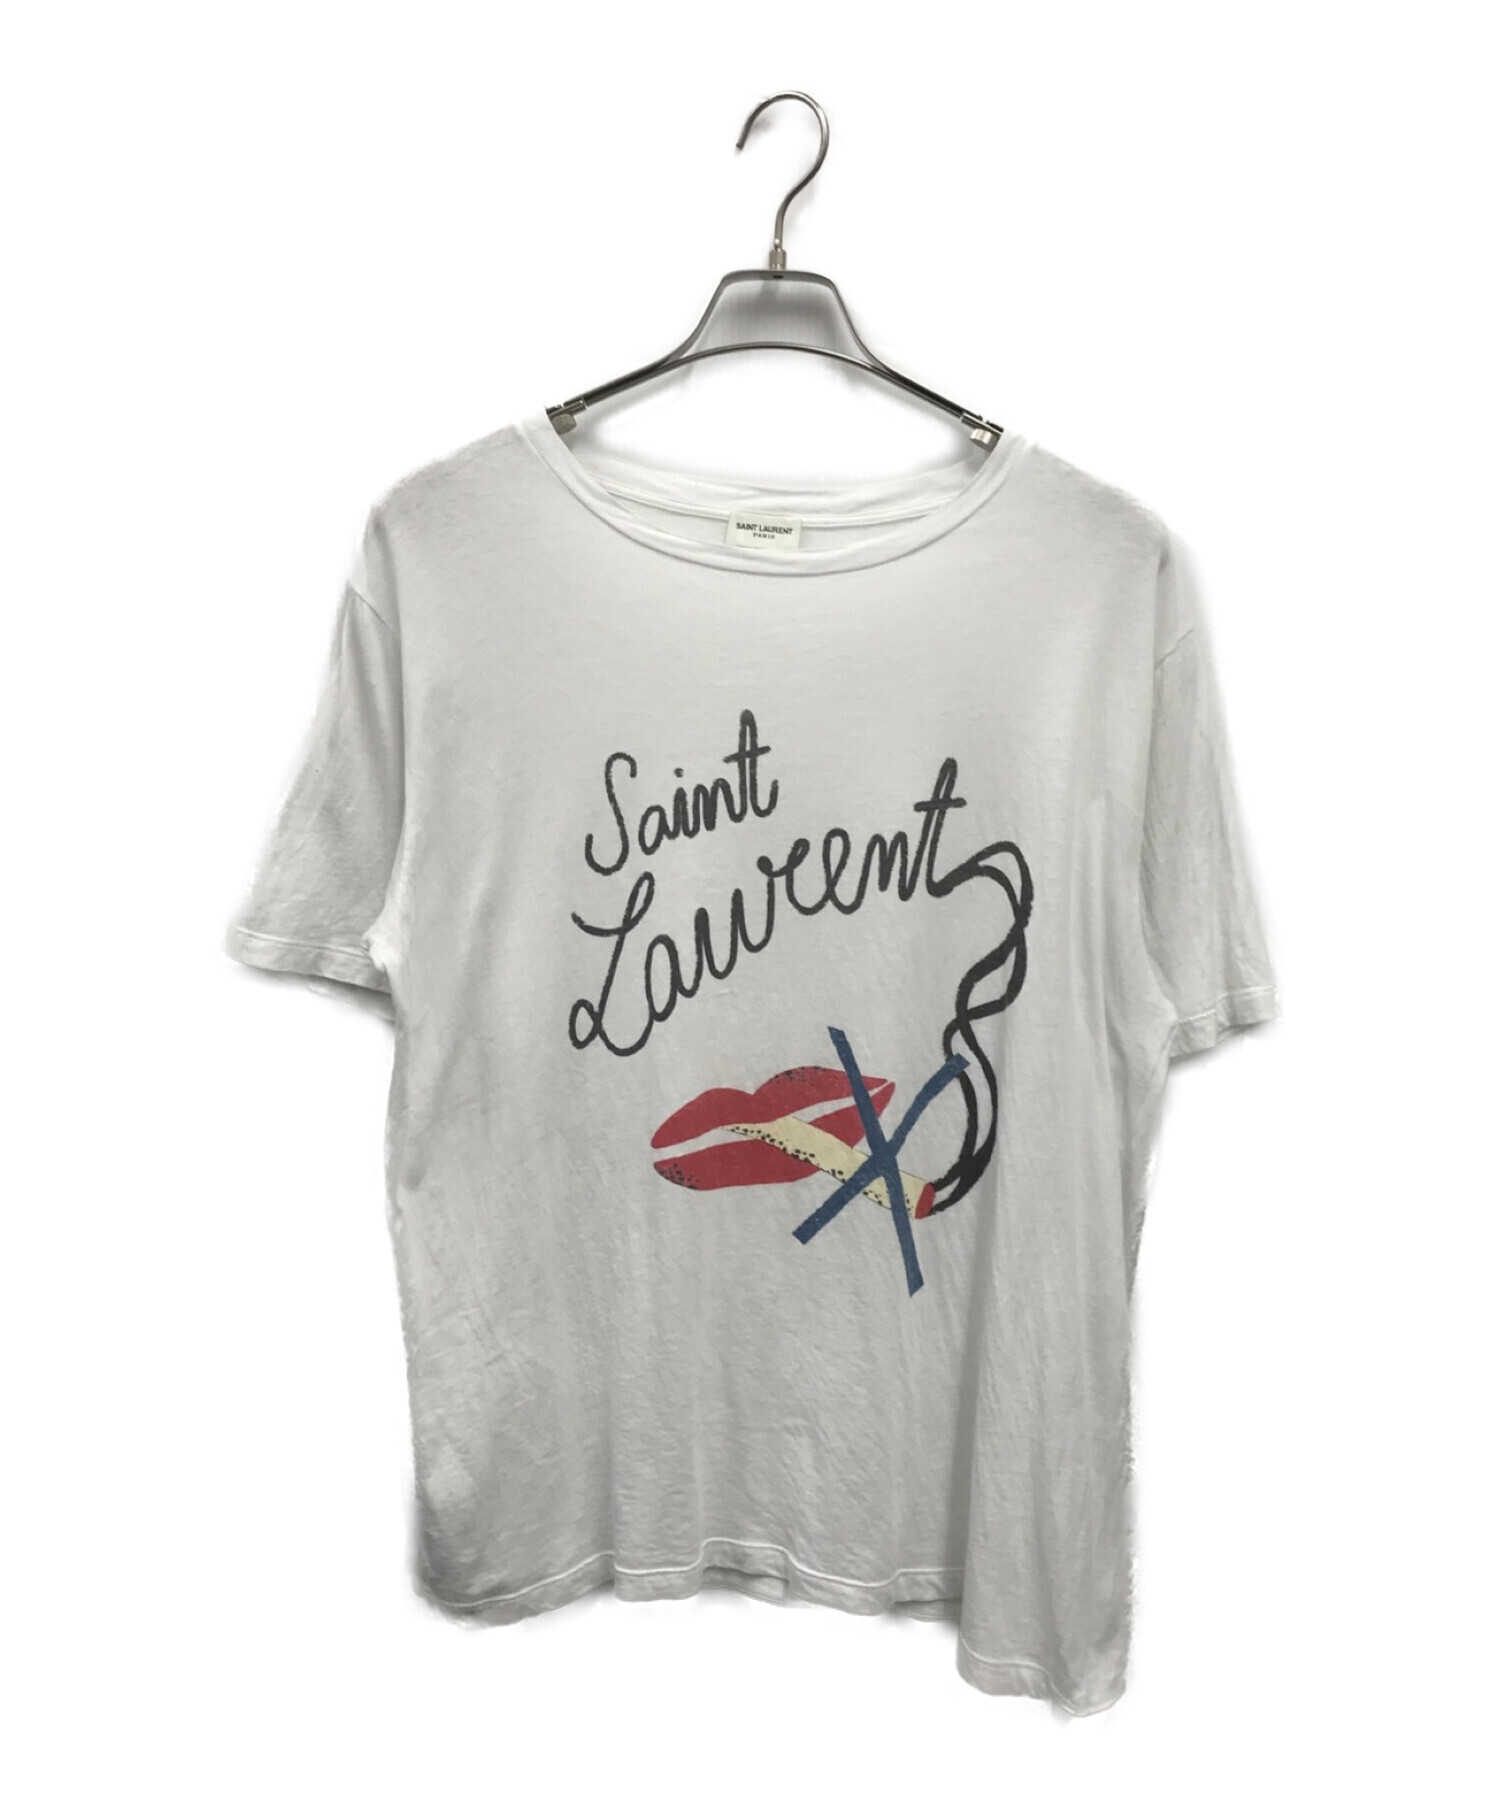 Saint Laurent Paris (サンローランパリ) リップシガーノースモーキングTシャツ ホワイト サイズ:S